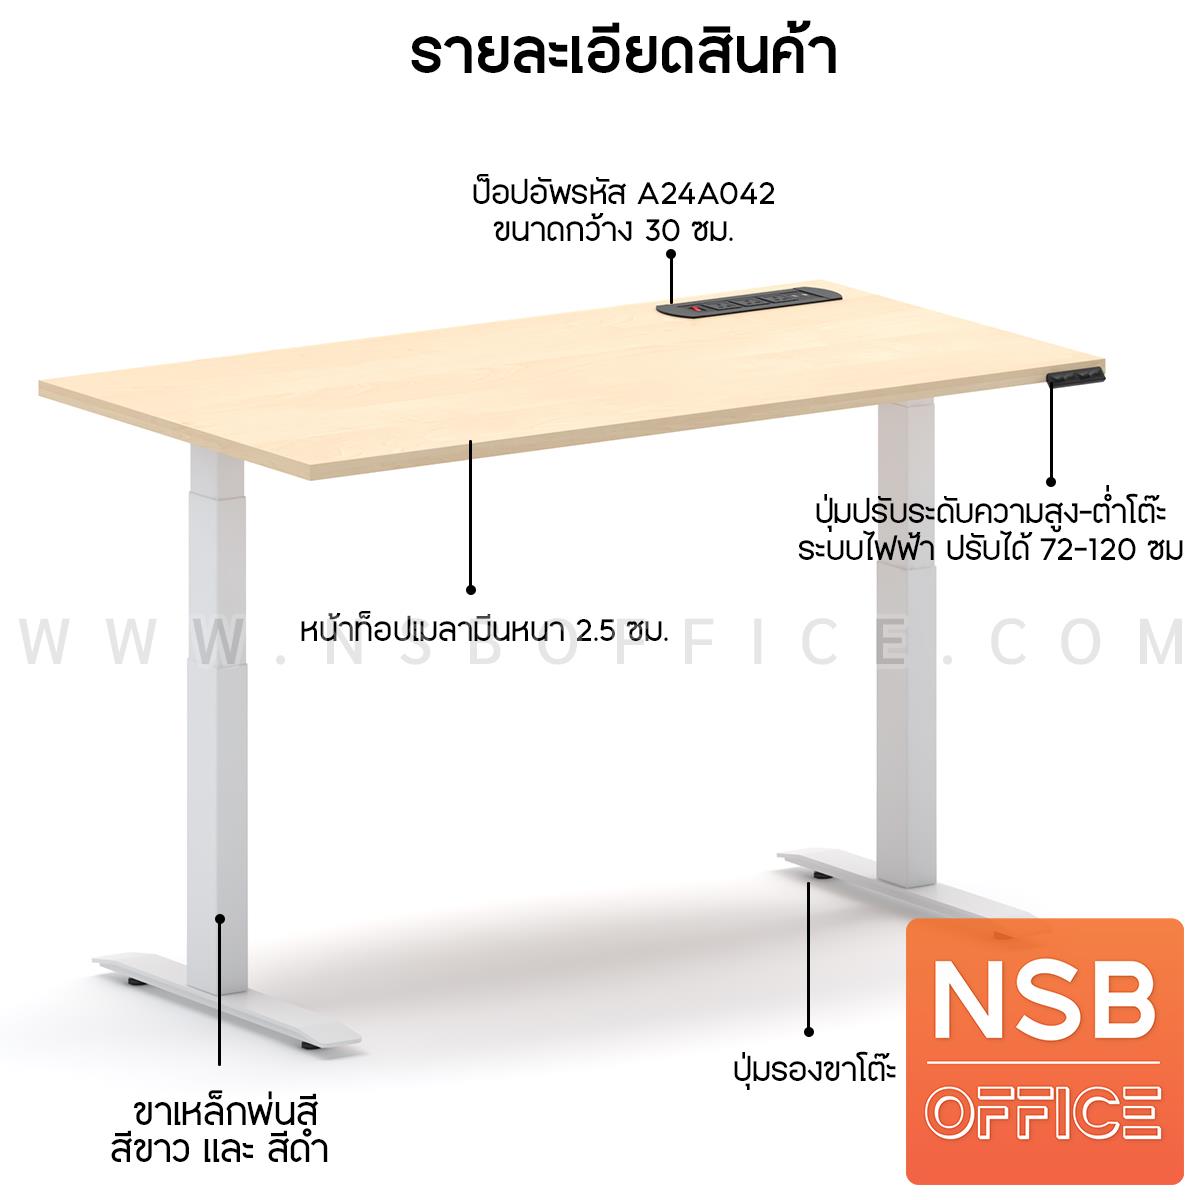 โต๊ะทำงานปรับระดับ Sit 2 Stand ระบบไฟฟ้า รุ่น Flaxen 3 (แฟลกซ์เซ็น 3) ขนาด 150W, 180W cm.  พร้อมป็อปอัพรุ่น A24A042